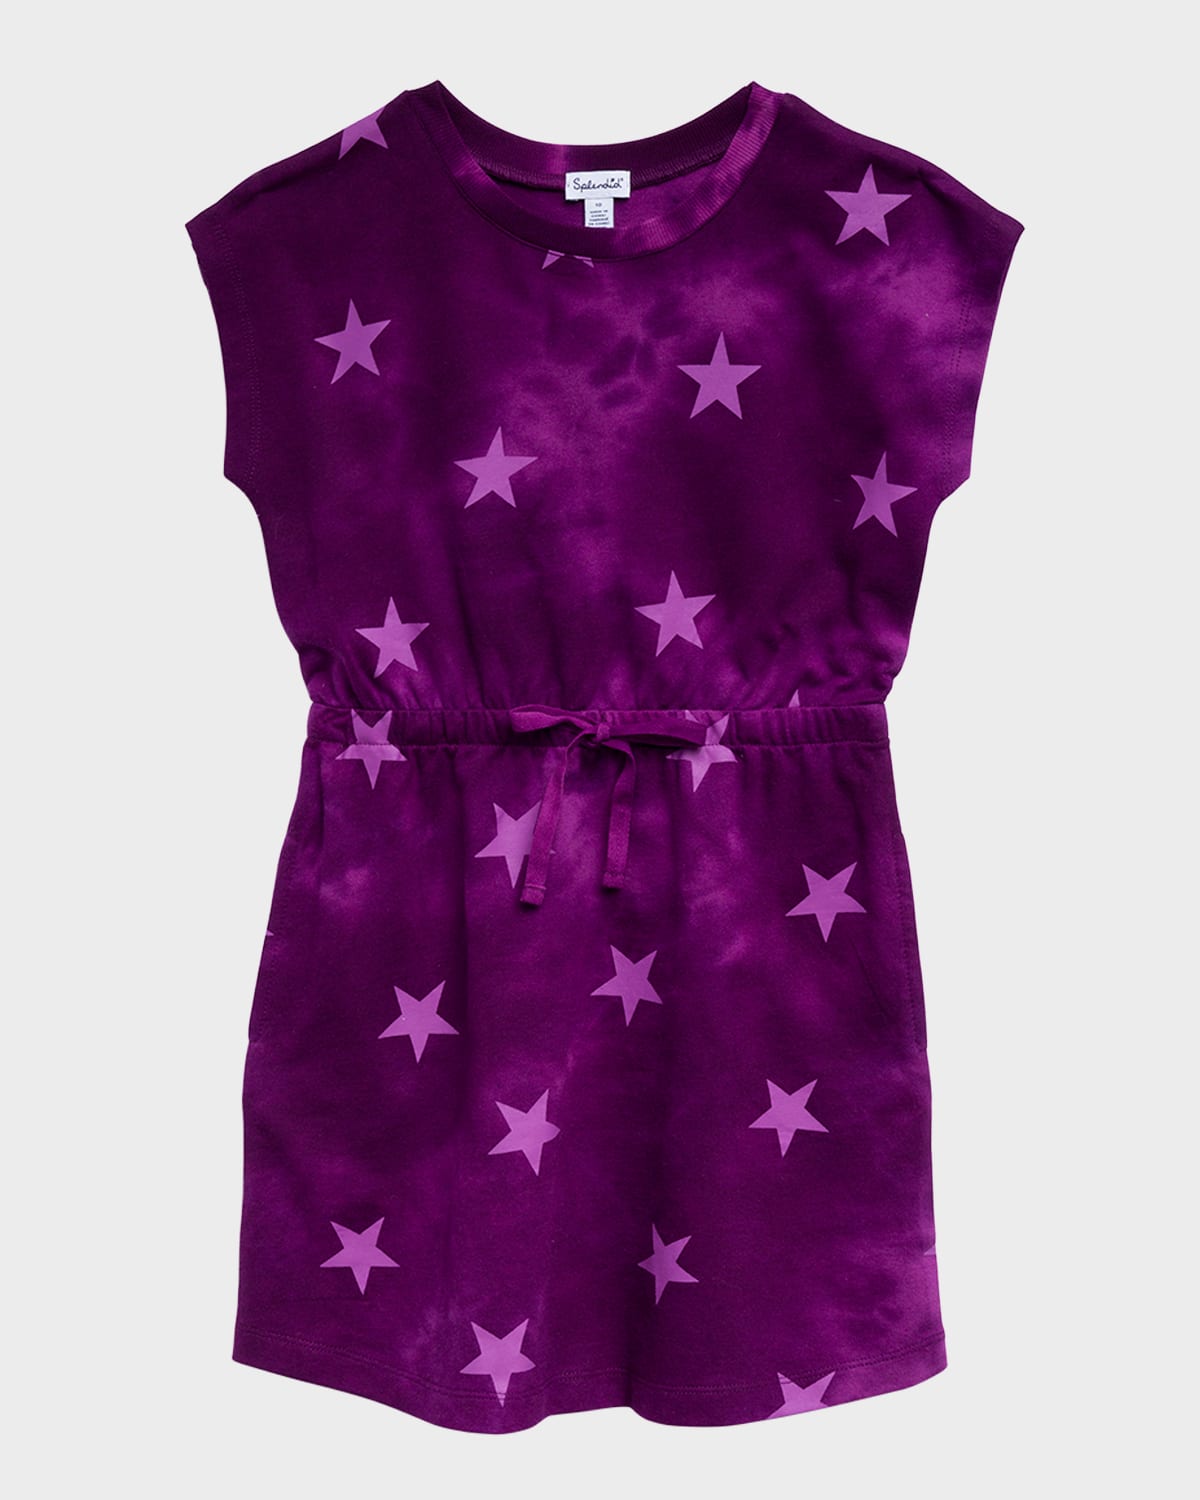 SPLENDID GIRL'S POPSTAR STAR-PRINT DRESS